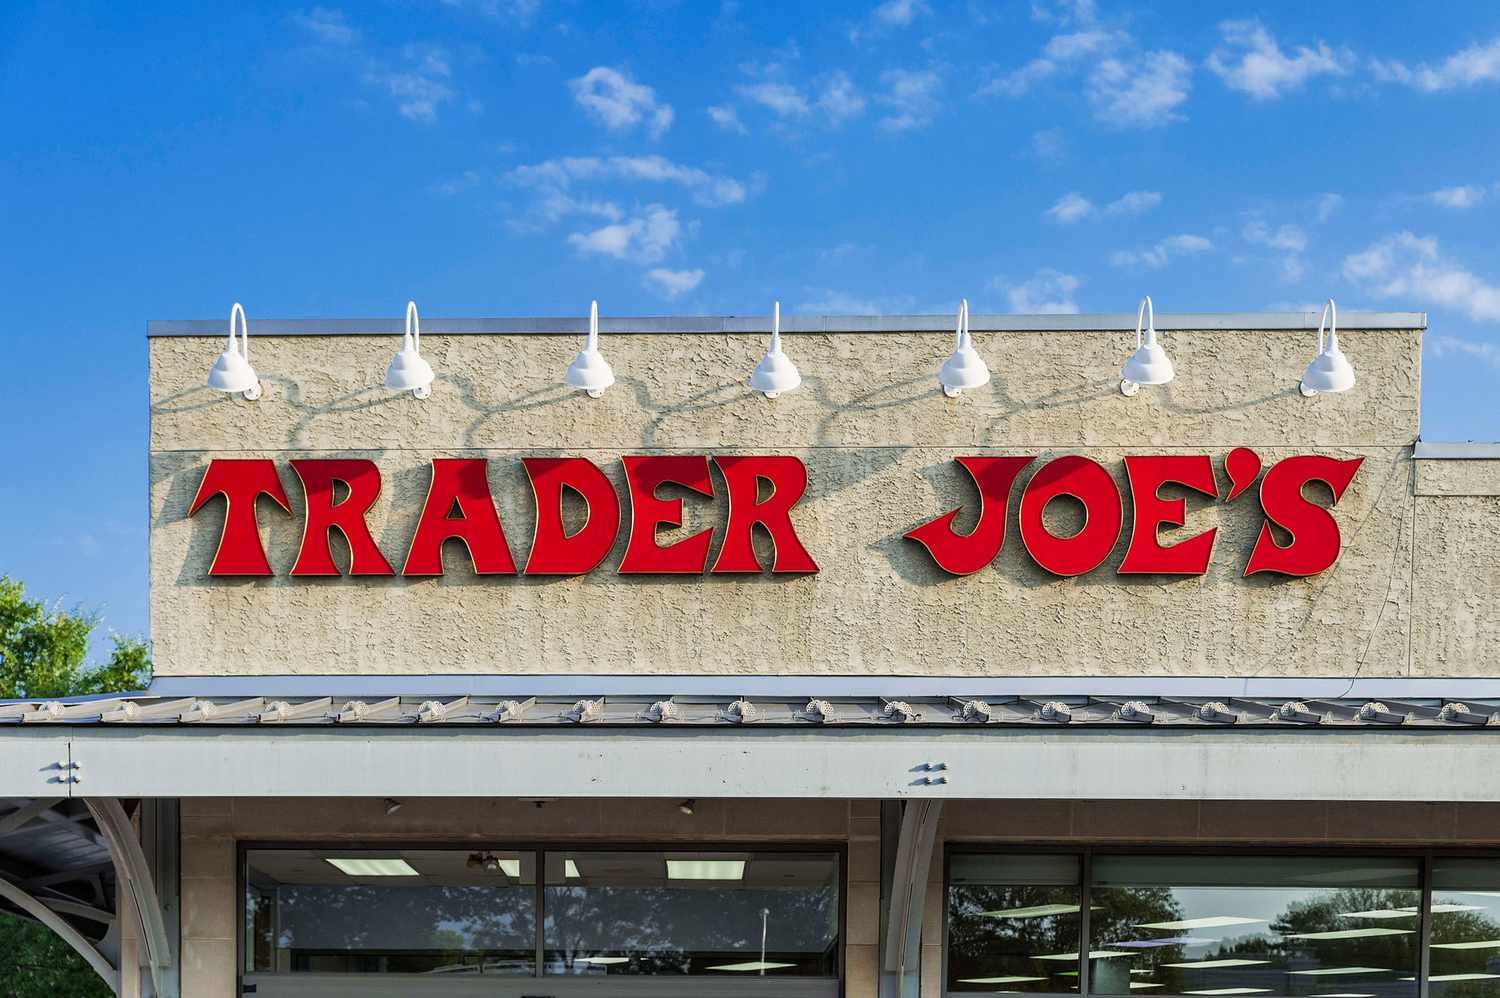 Trader Joe's sign